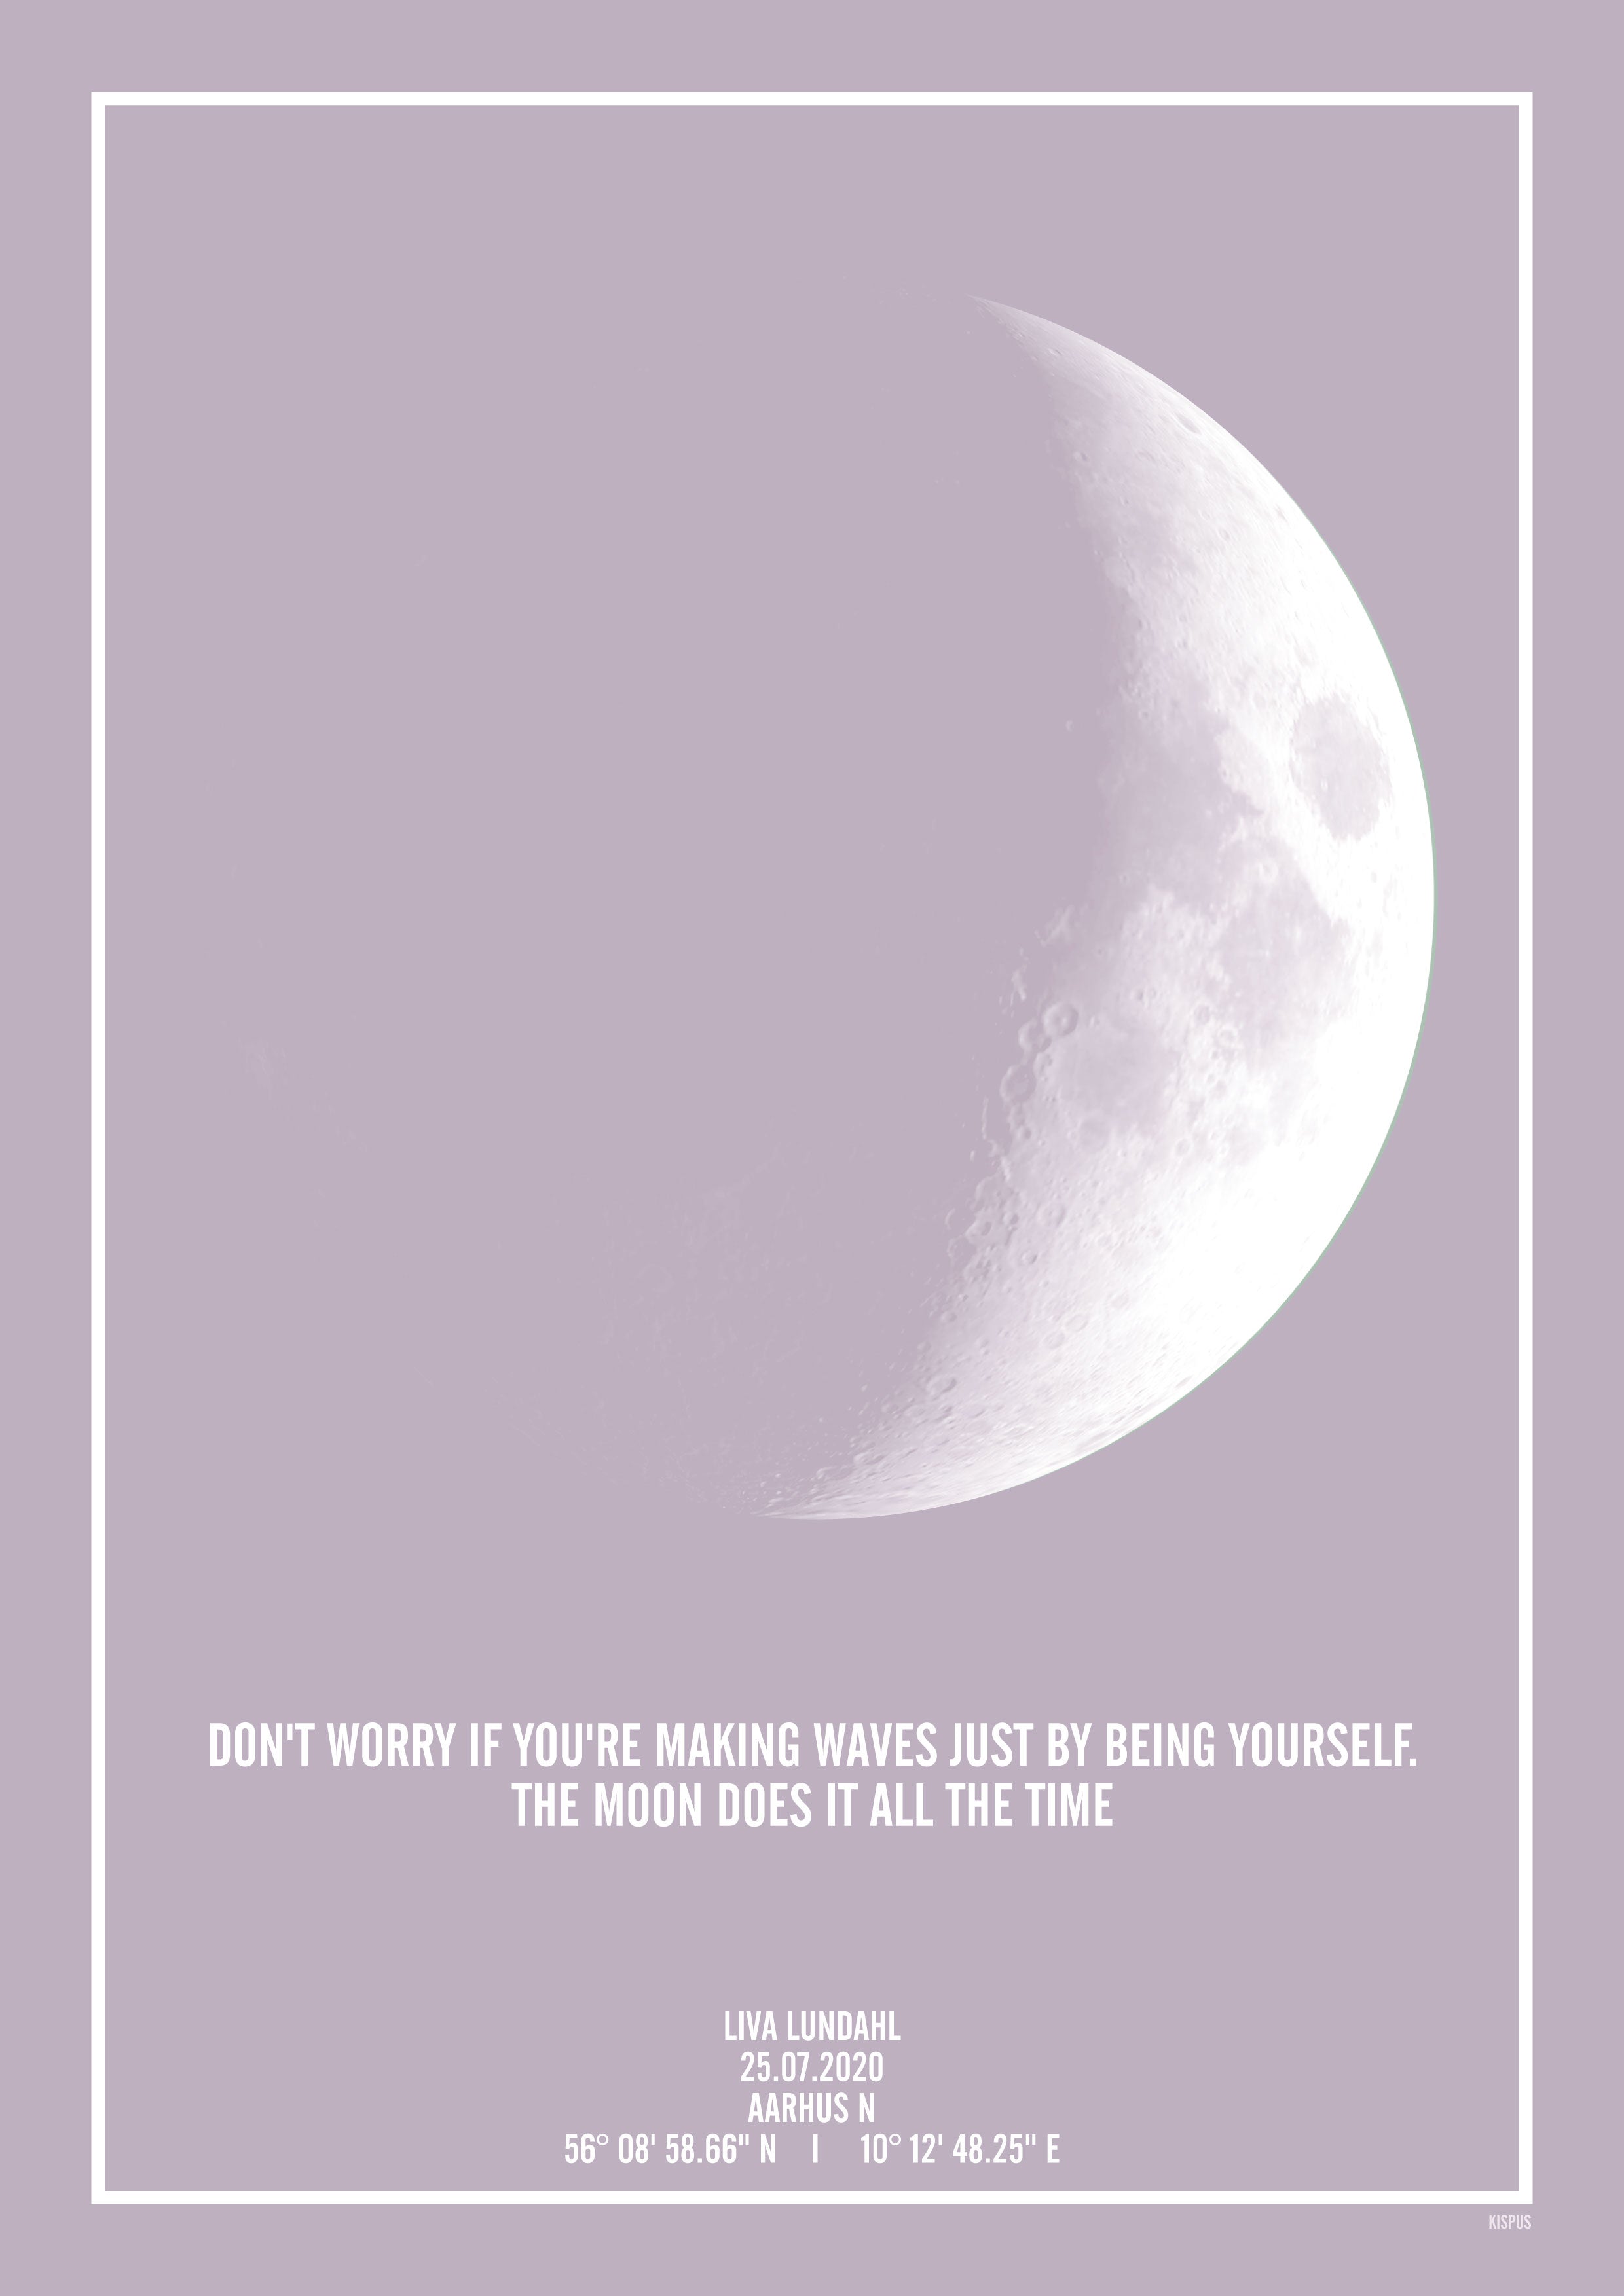 Plakat med print af hvordan månen så ud. Indsæt dit eget citat.